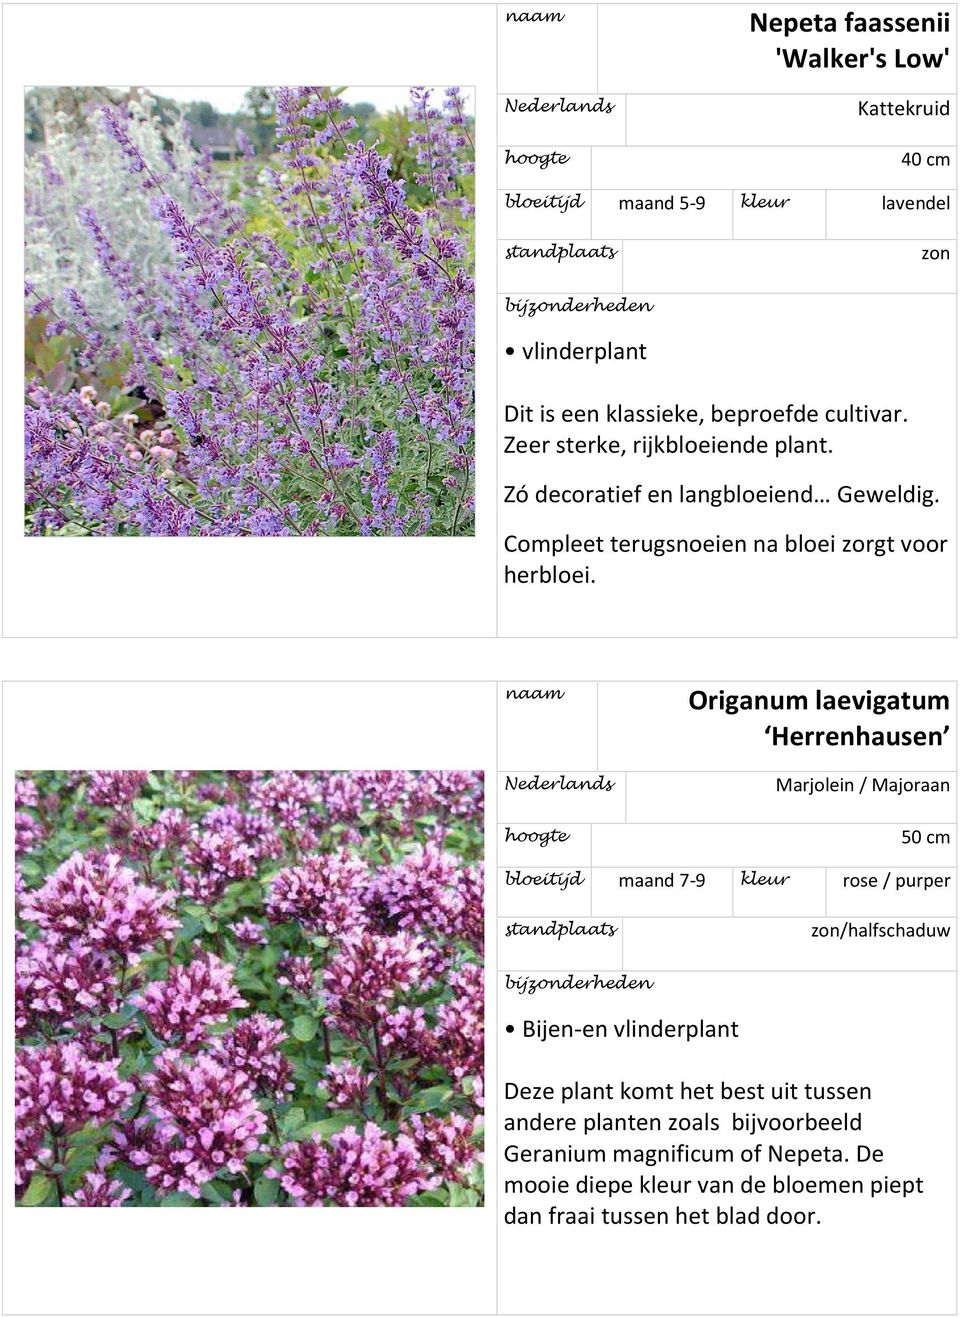 Origanum laevigatum Herrenhausen Marjolein / Majoraan 50 cm bloeitijd maand 7-9 kleur rose / purper Bijen-en vlinderplant Deze plant